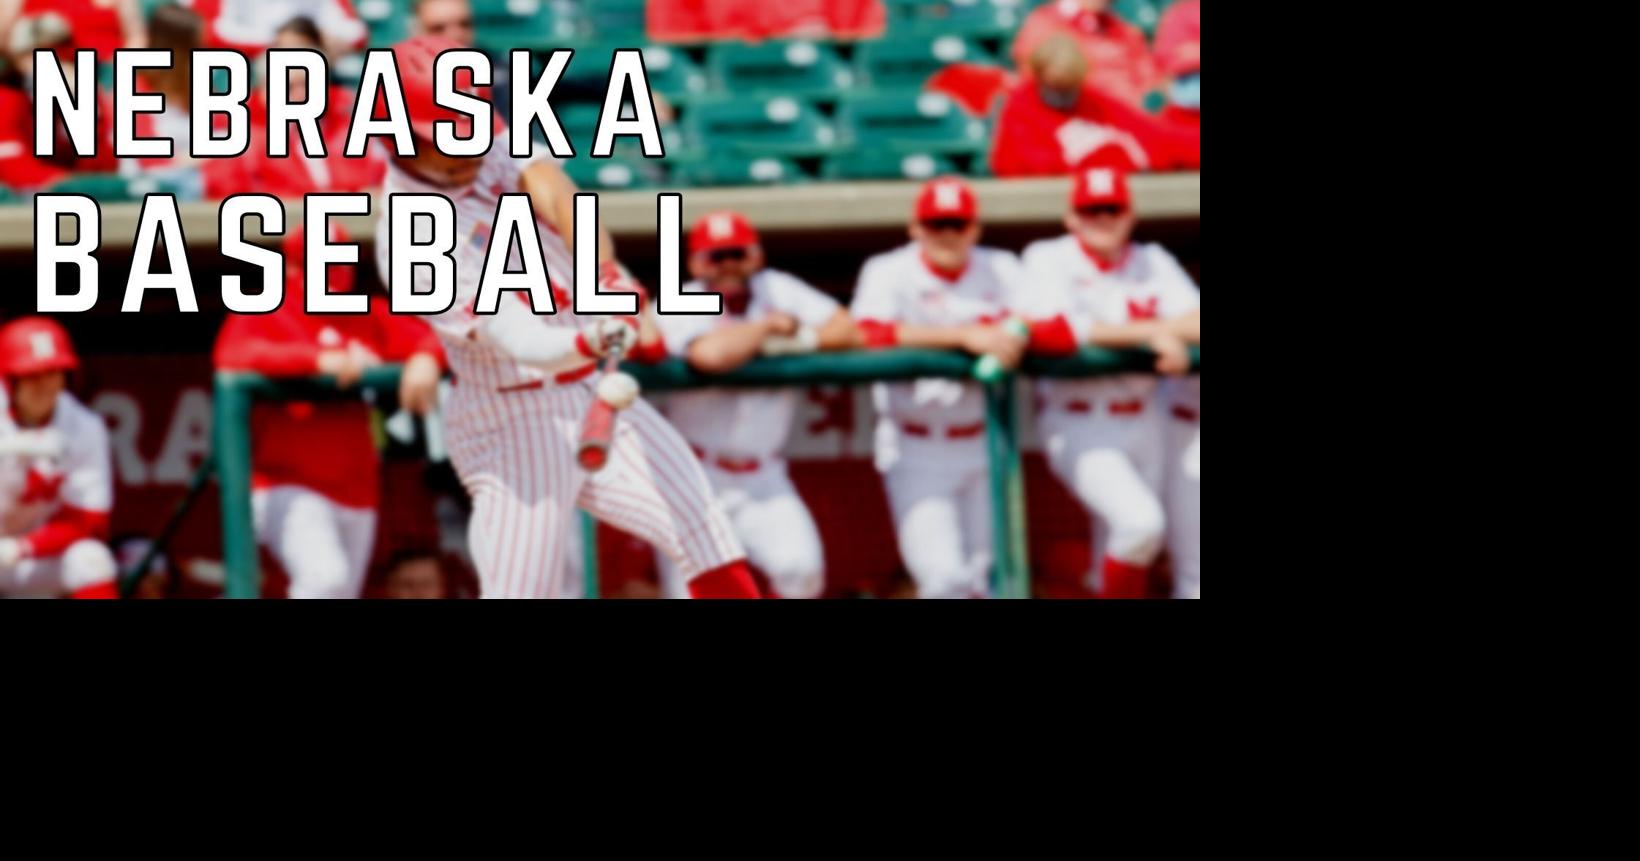 Baseball Red vs White Series G3 Photos - University of Nebraska